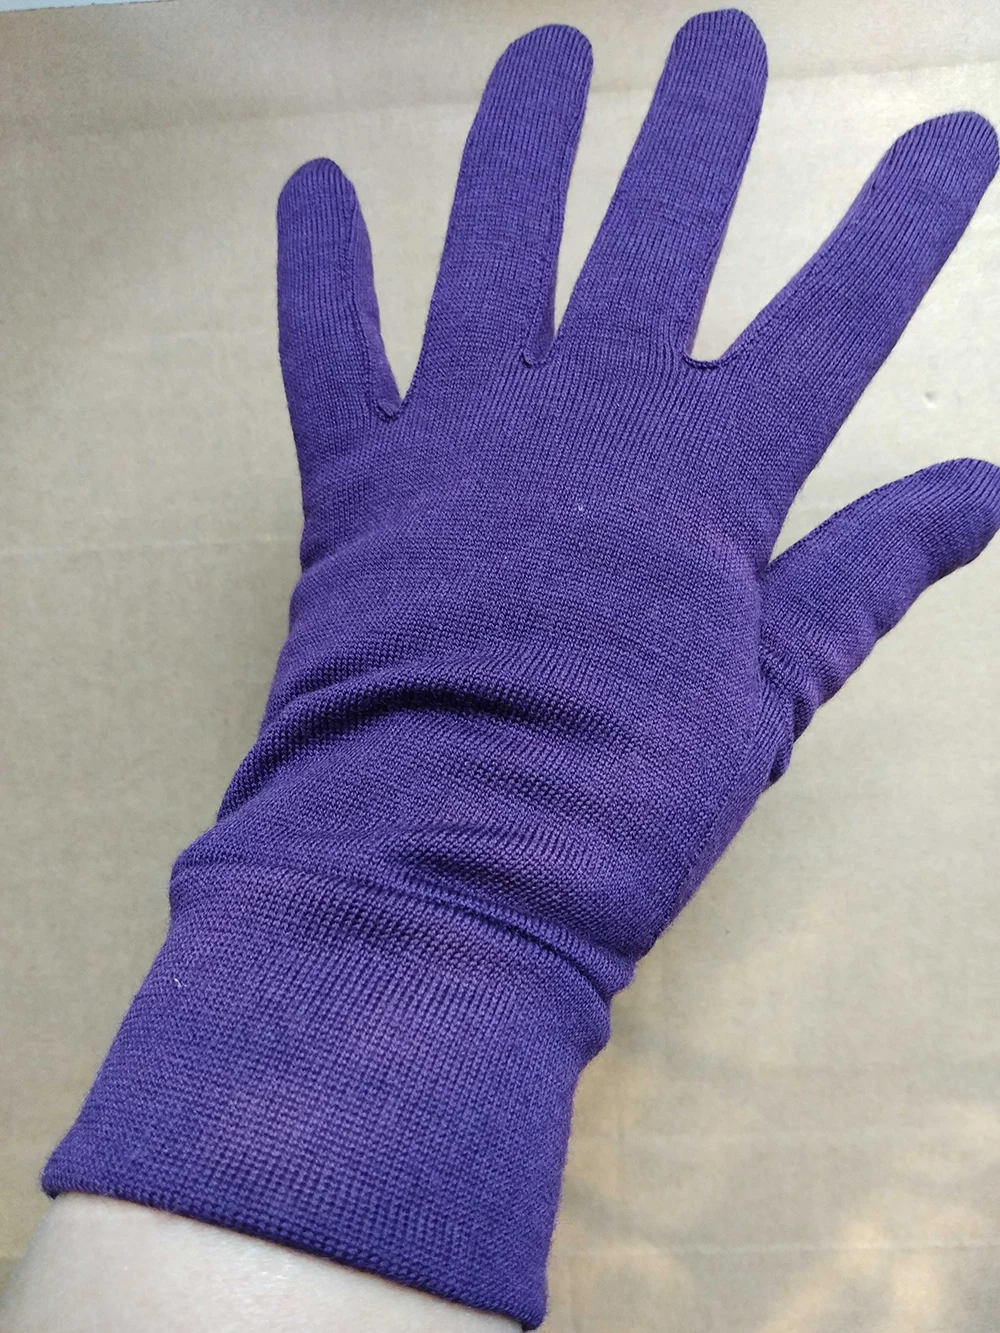 Унисекс перчатки из мериносовой шерсти австралийская мериносовая шерсть Мужские и женские перчатки тепловые влагоотводящие ветрозащитные Размер XS-XL